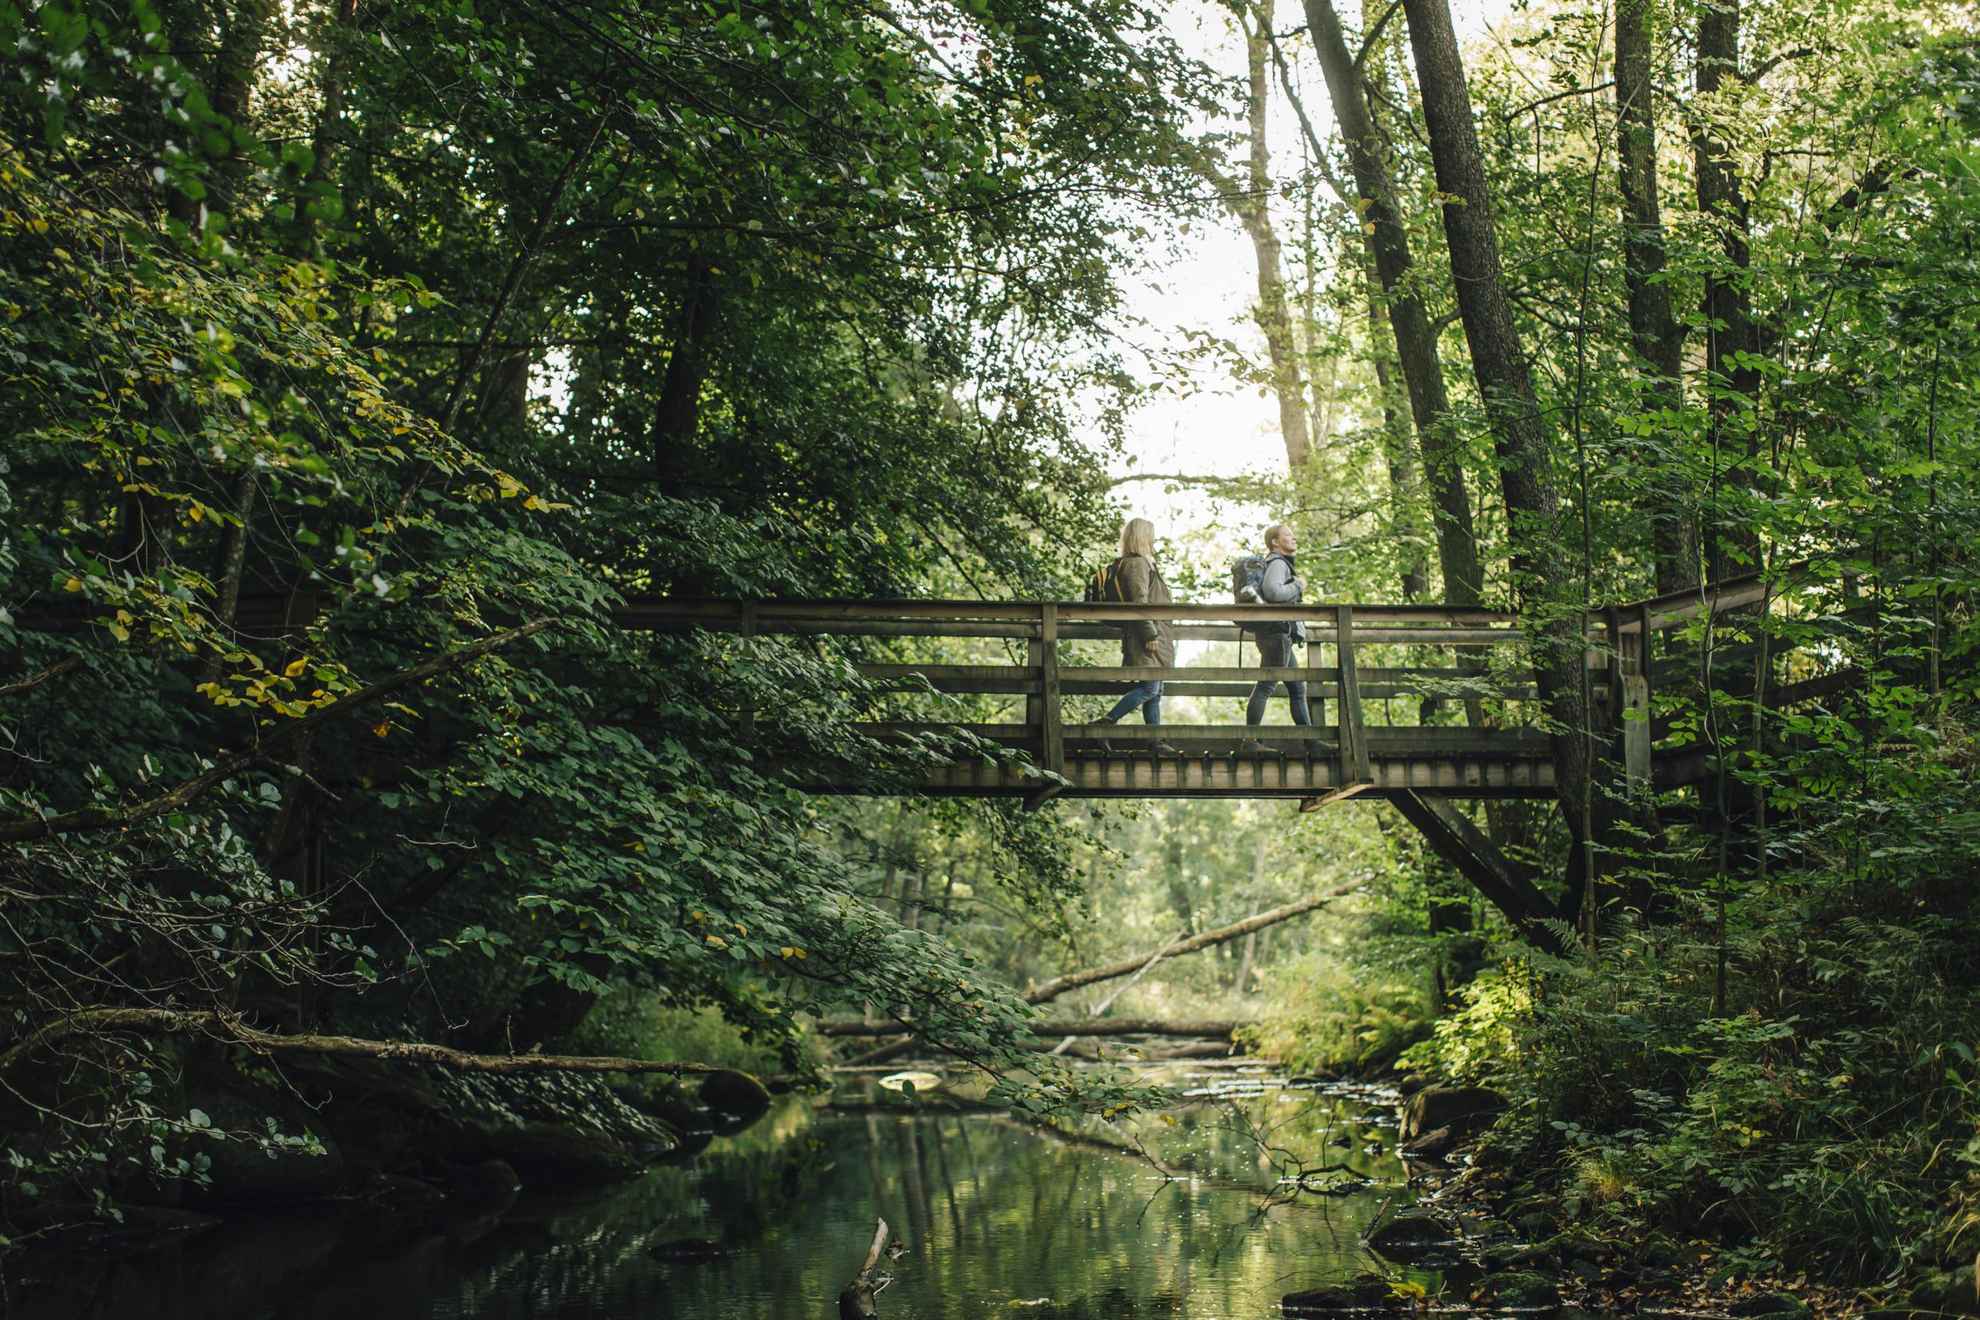 Twee mensen lopen over een kleine brug over een beek in een weelderig bos.